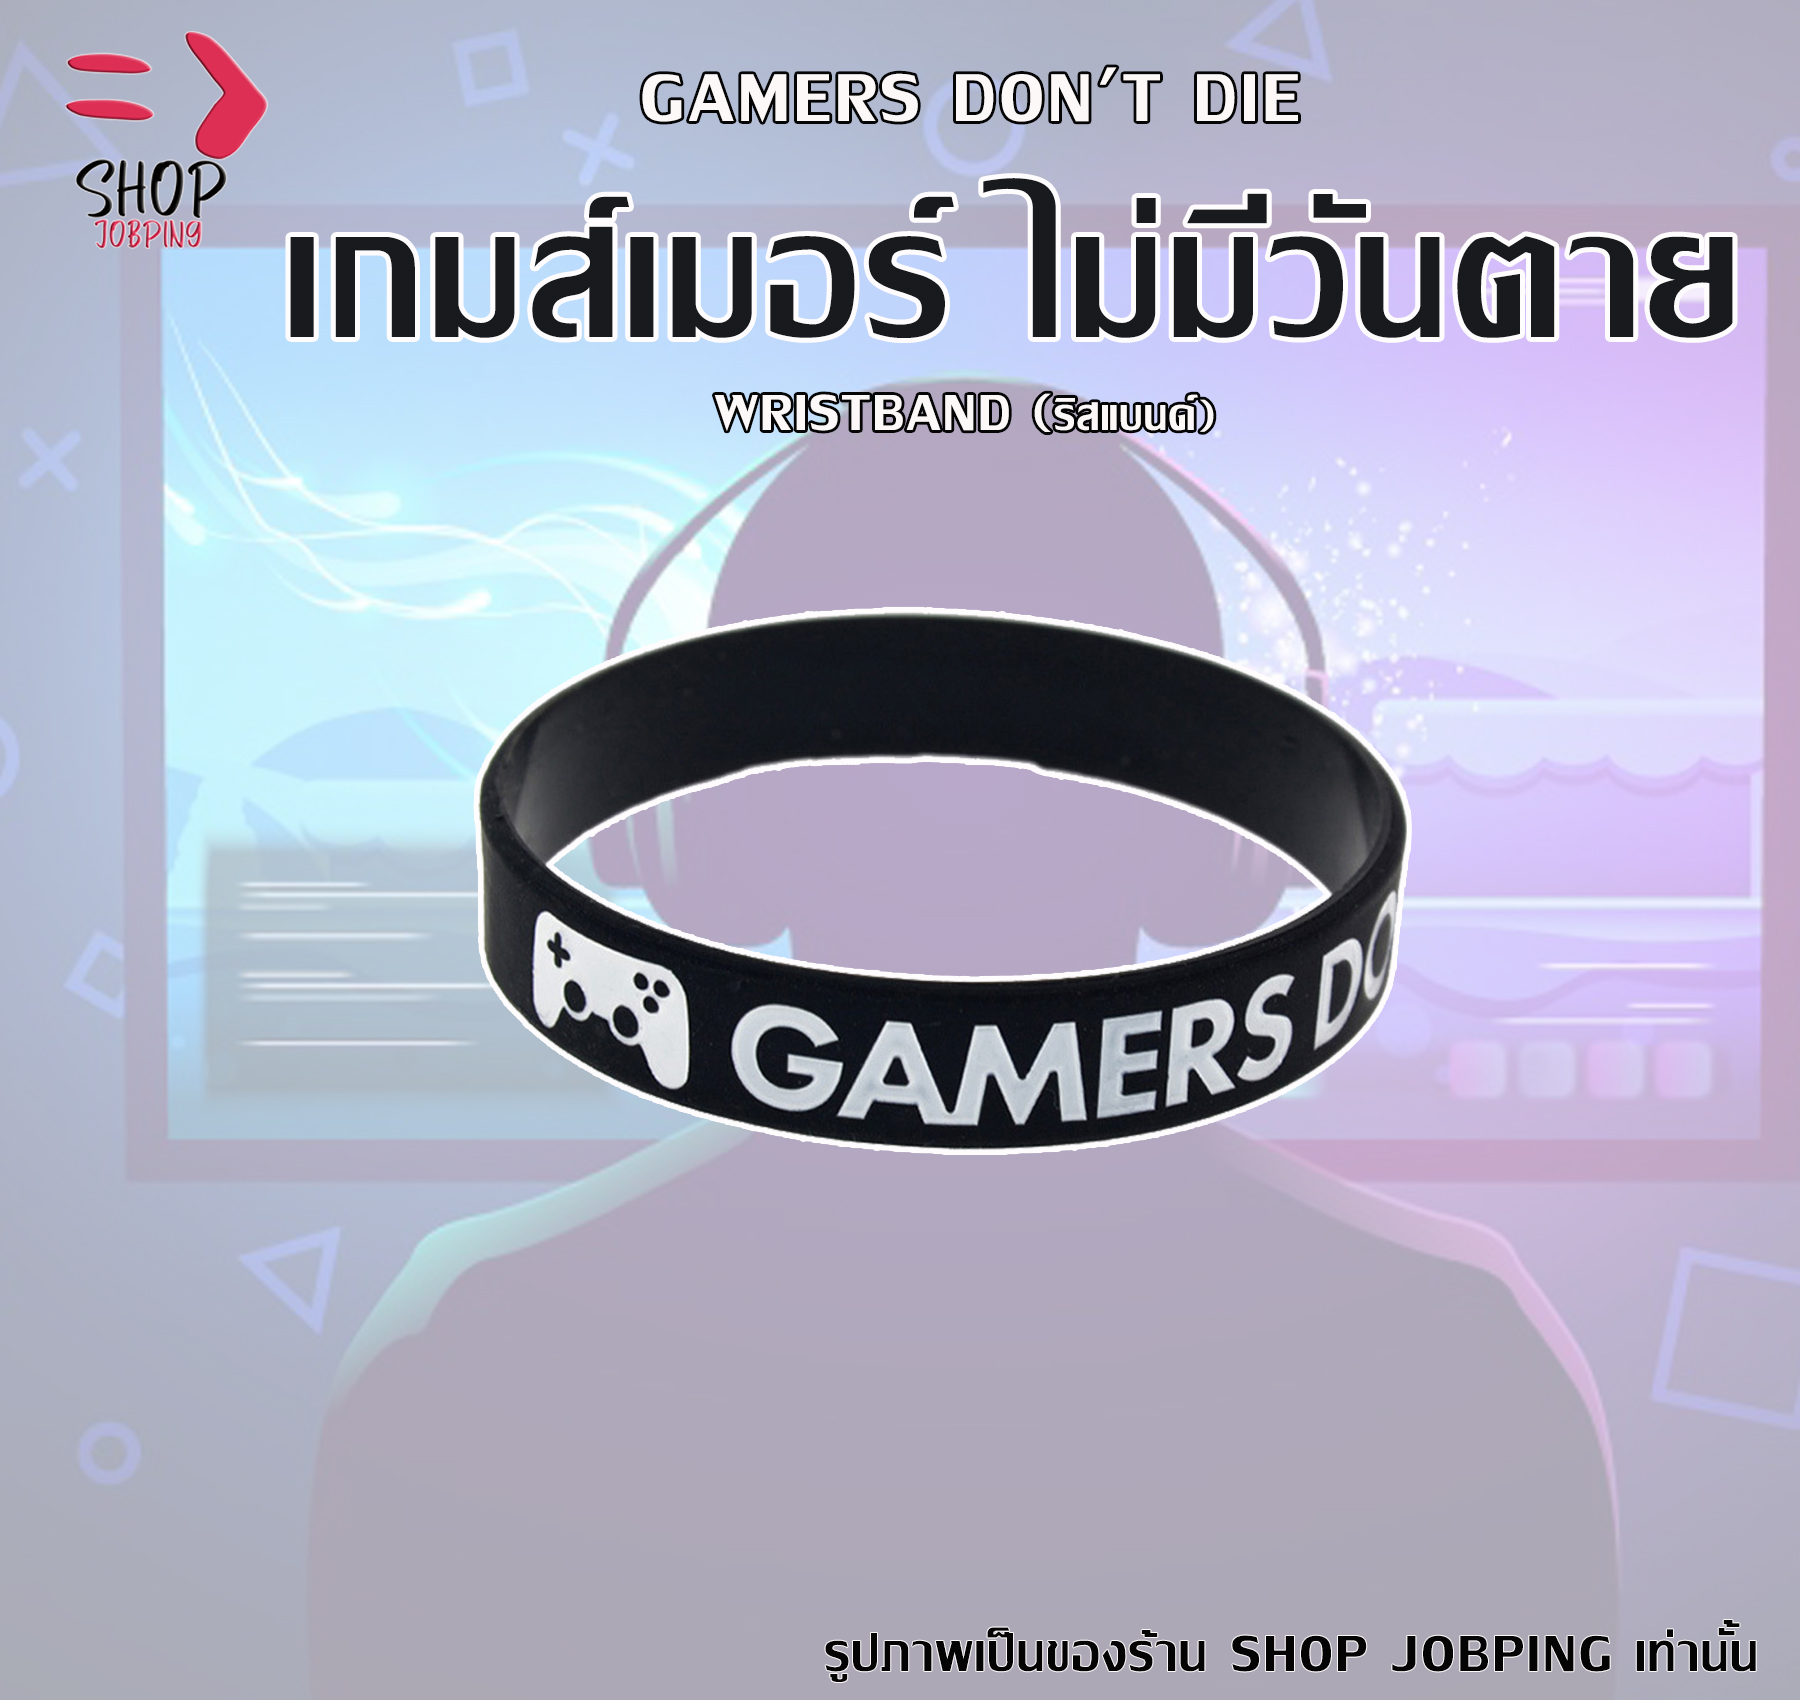 Gamers Don't Die ริสแบนด์ เกมส์เมอร์ไม่มีวันตาย ปั๊มลึกสีคมชัด Wristband ริสแบนด์สำหรับเกมส์เมอร์ ริสแบนด์สำหรับคนชอบเล่นเกมส์